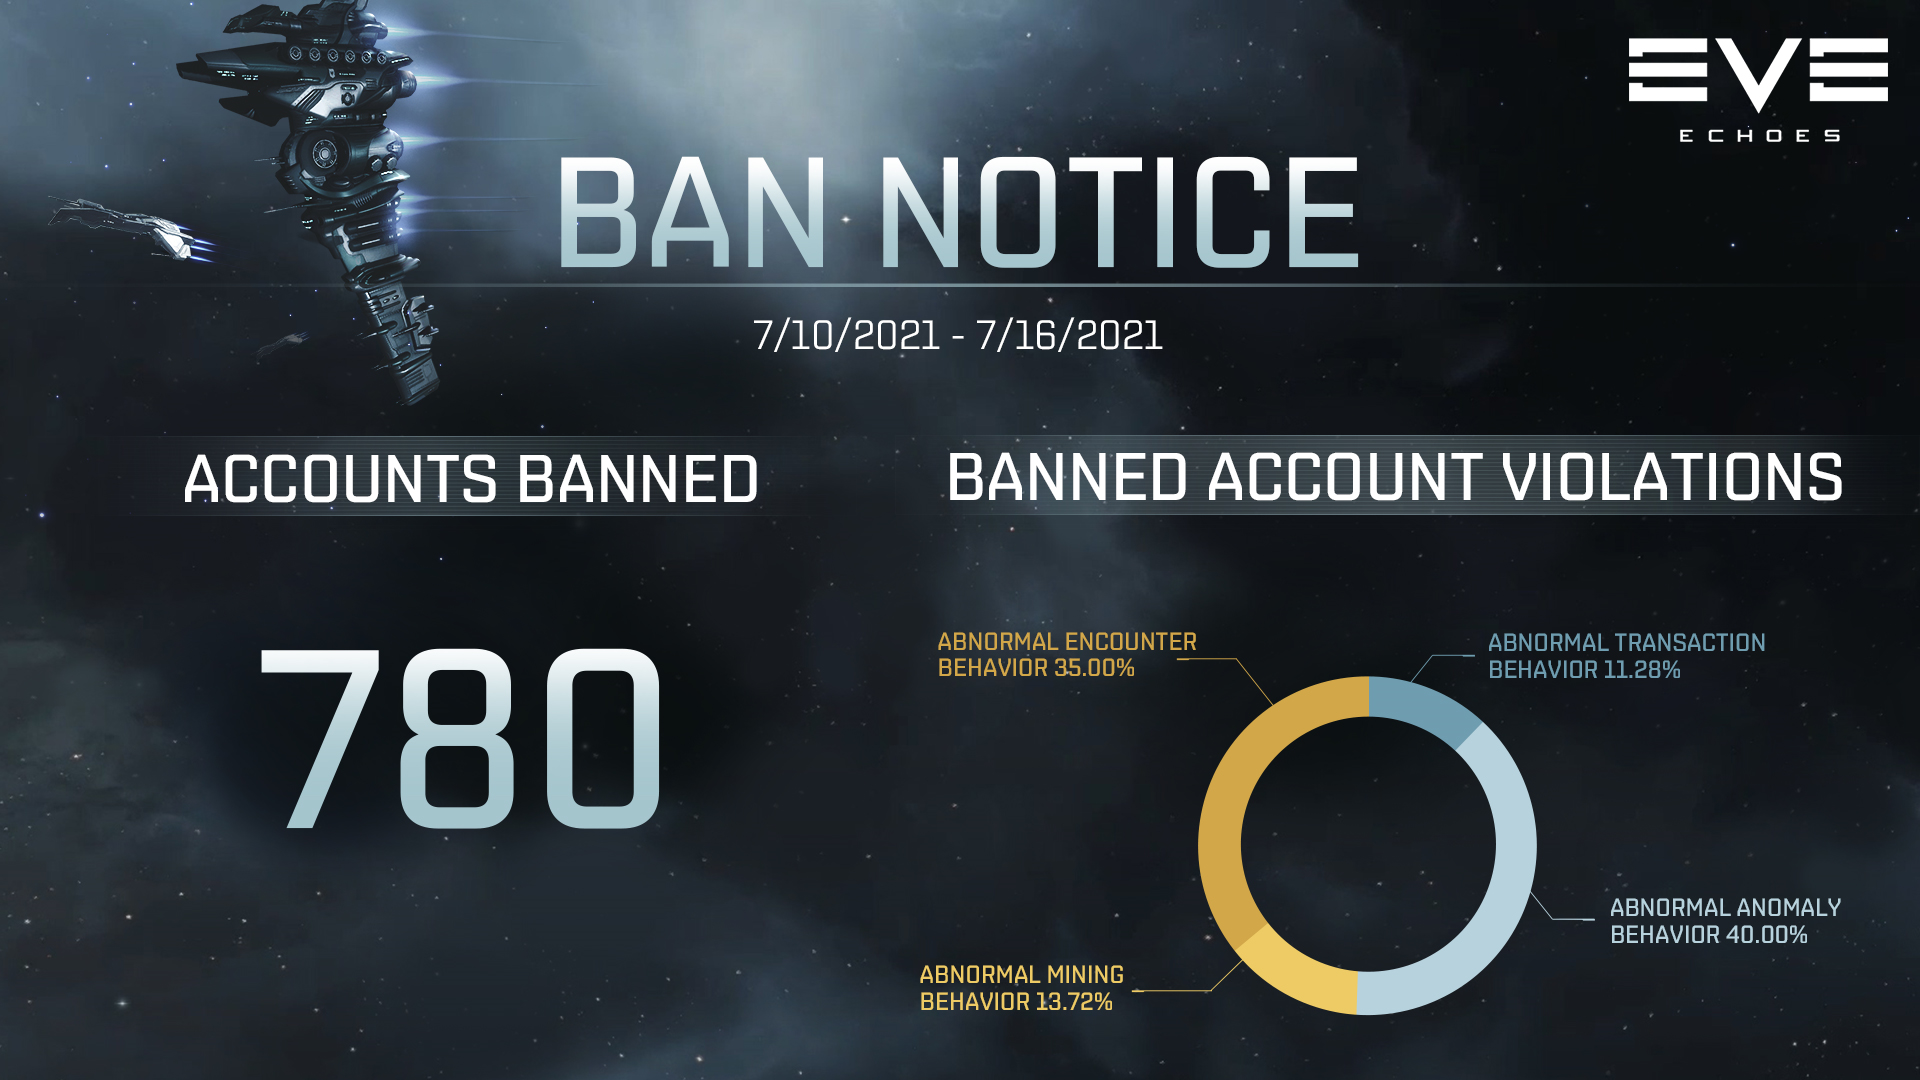 Weekly Ban Notice - July 19